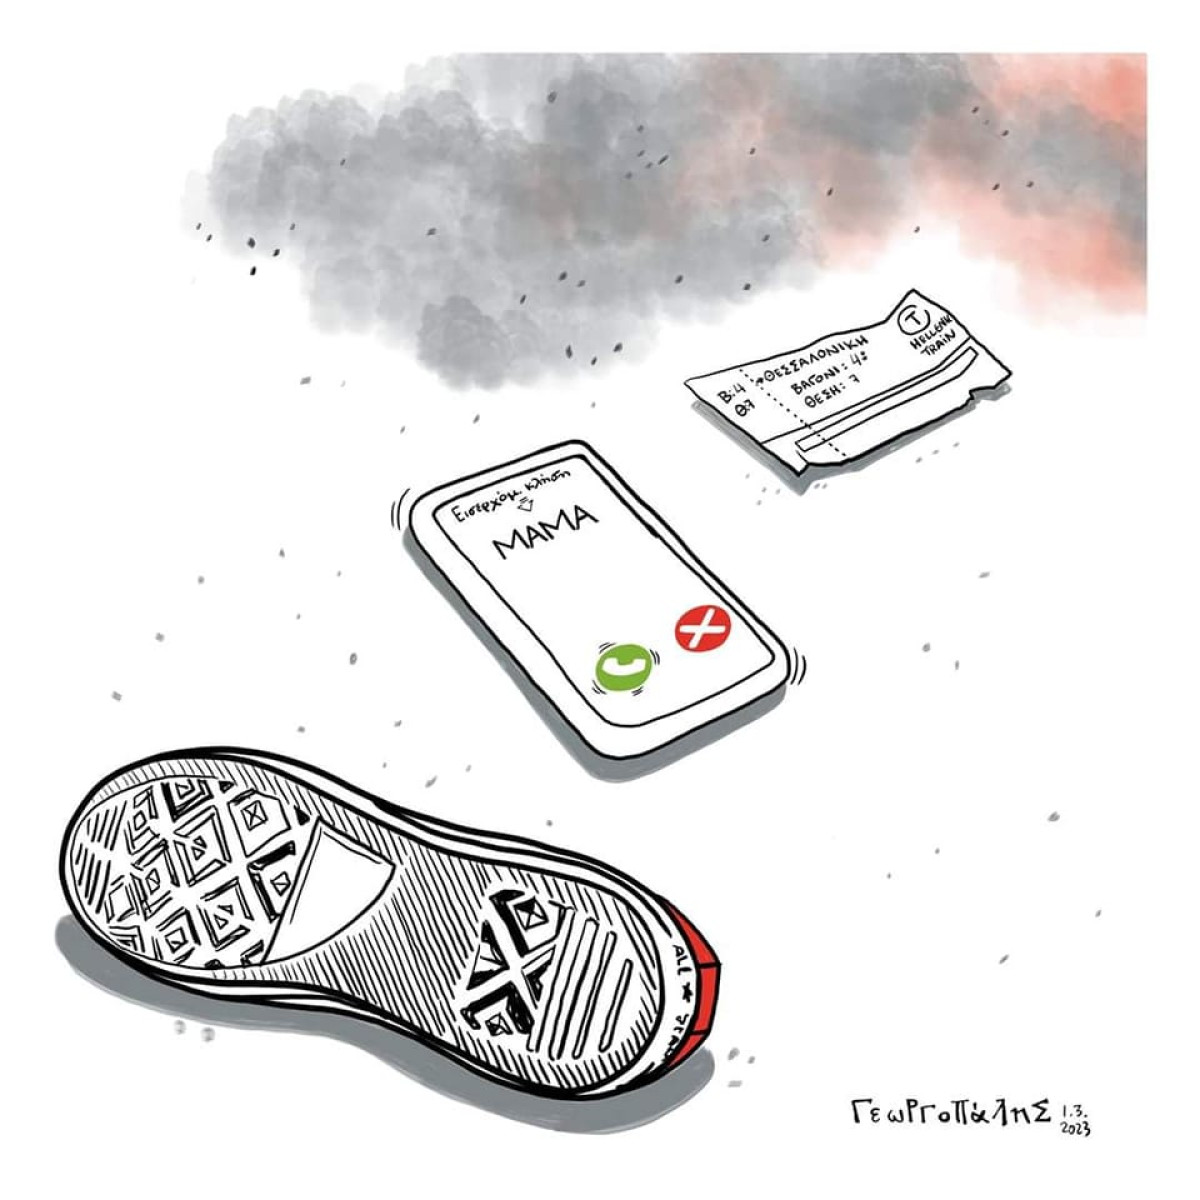 Τραγωδία στα Τέμπη: "Παίρνω το παιδί τηλέφωνο, αλλά δεν απαντάει" - Όταν ο χειρότερος εφιάλτης σου γίνεται πραγματικότητα